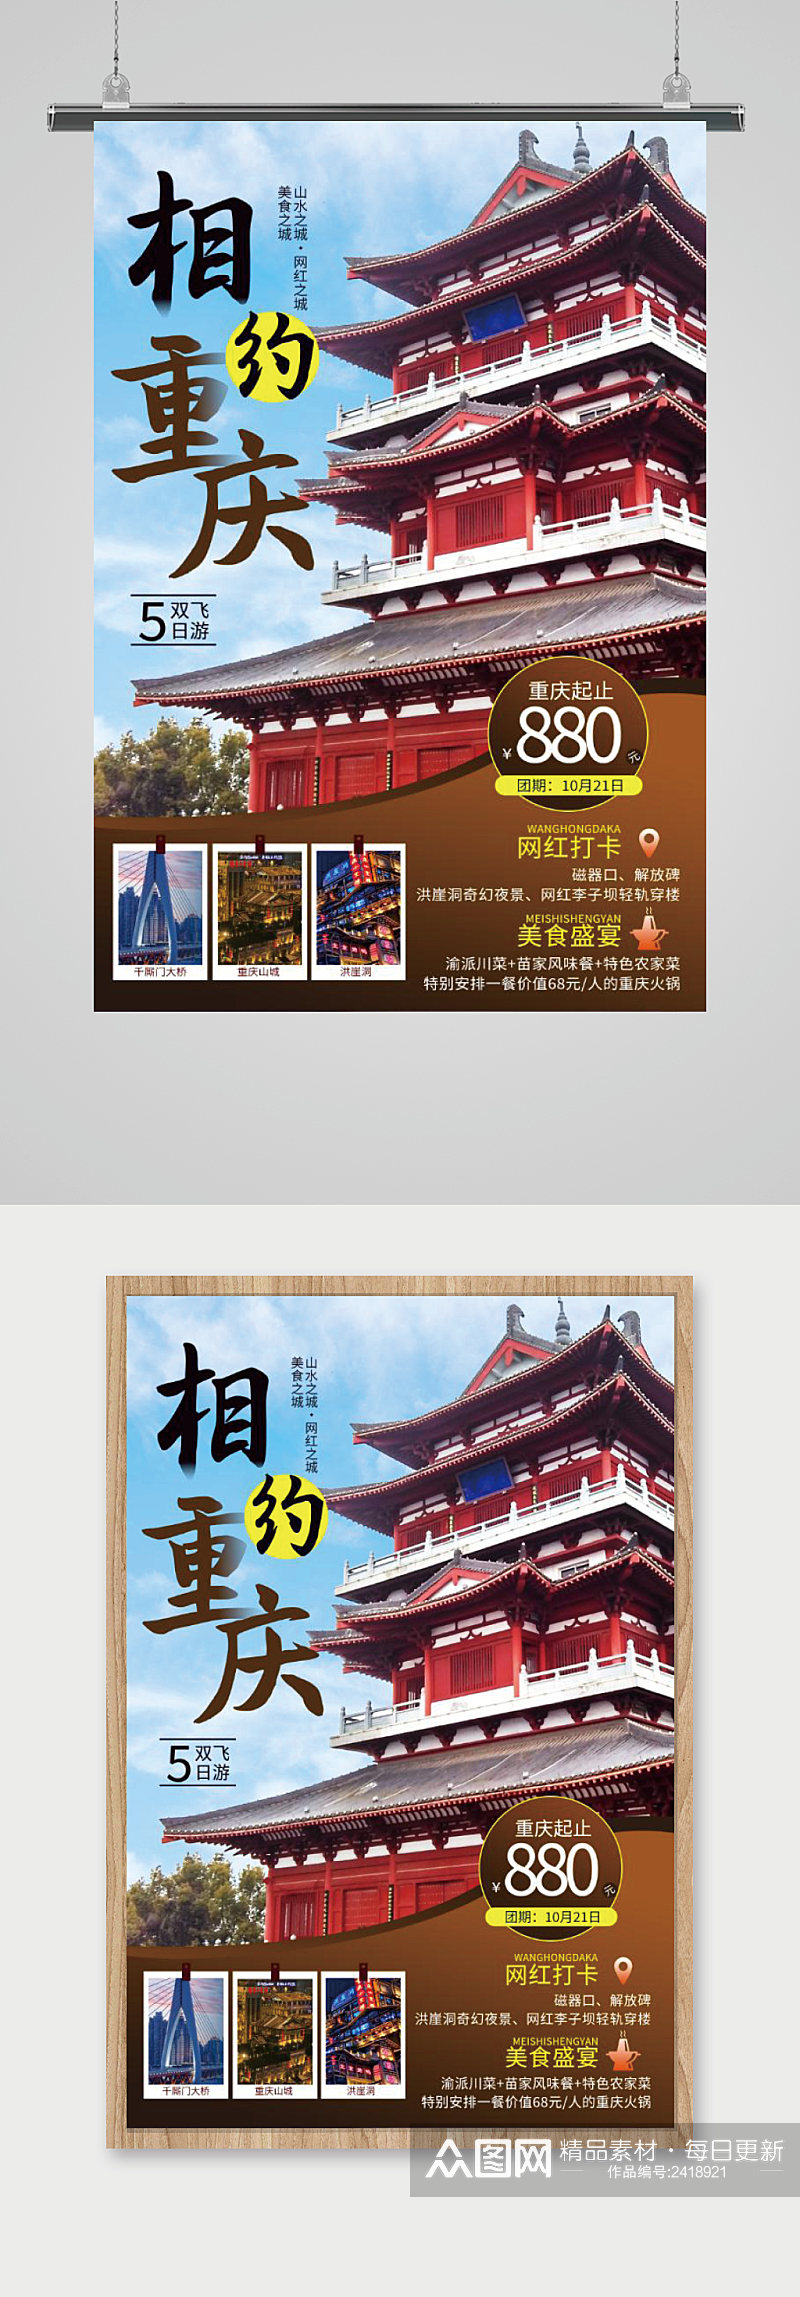 相约重庆重庆旅游海报素材